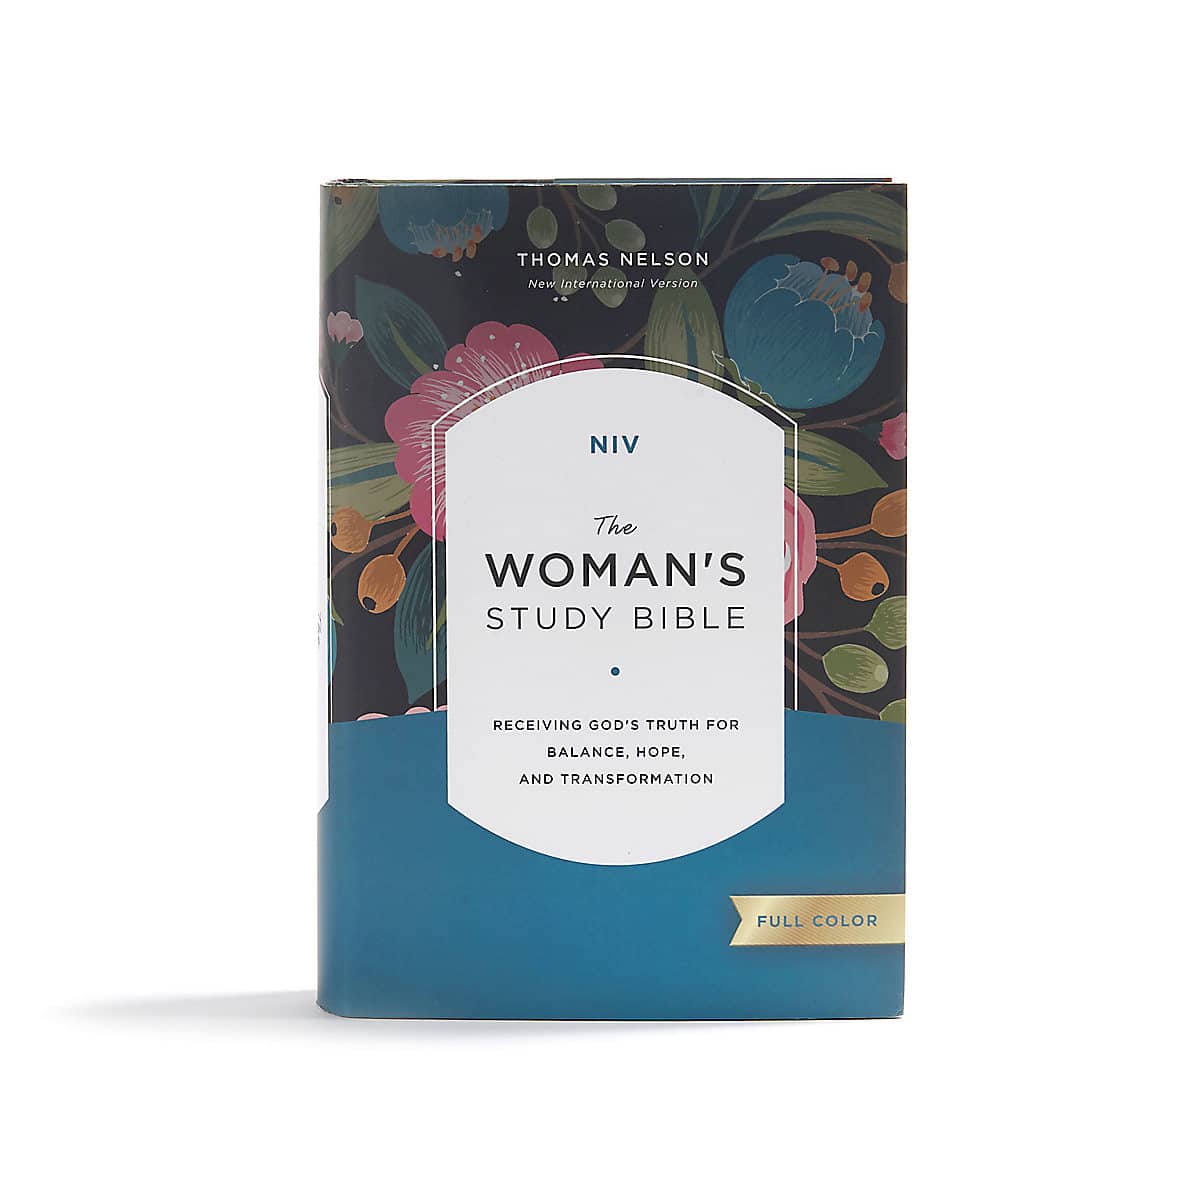 NIV woman's study Bible